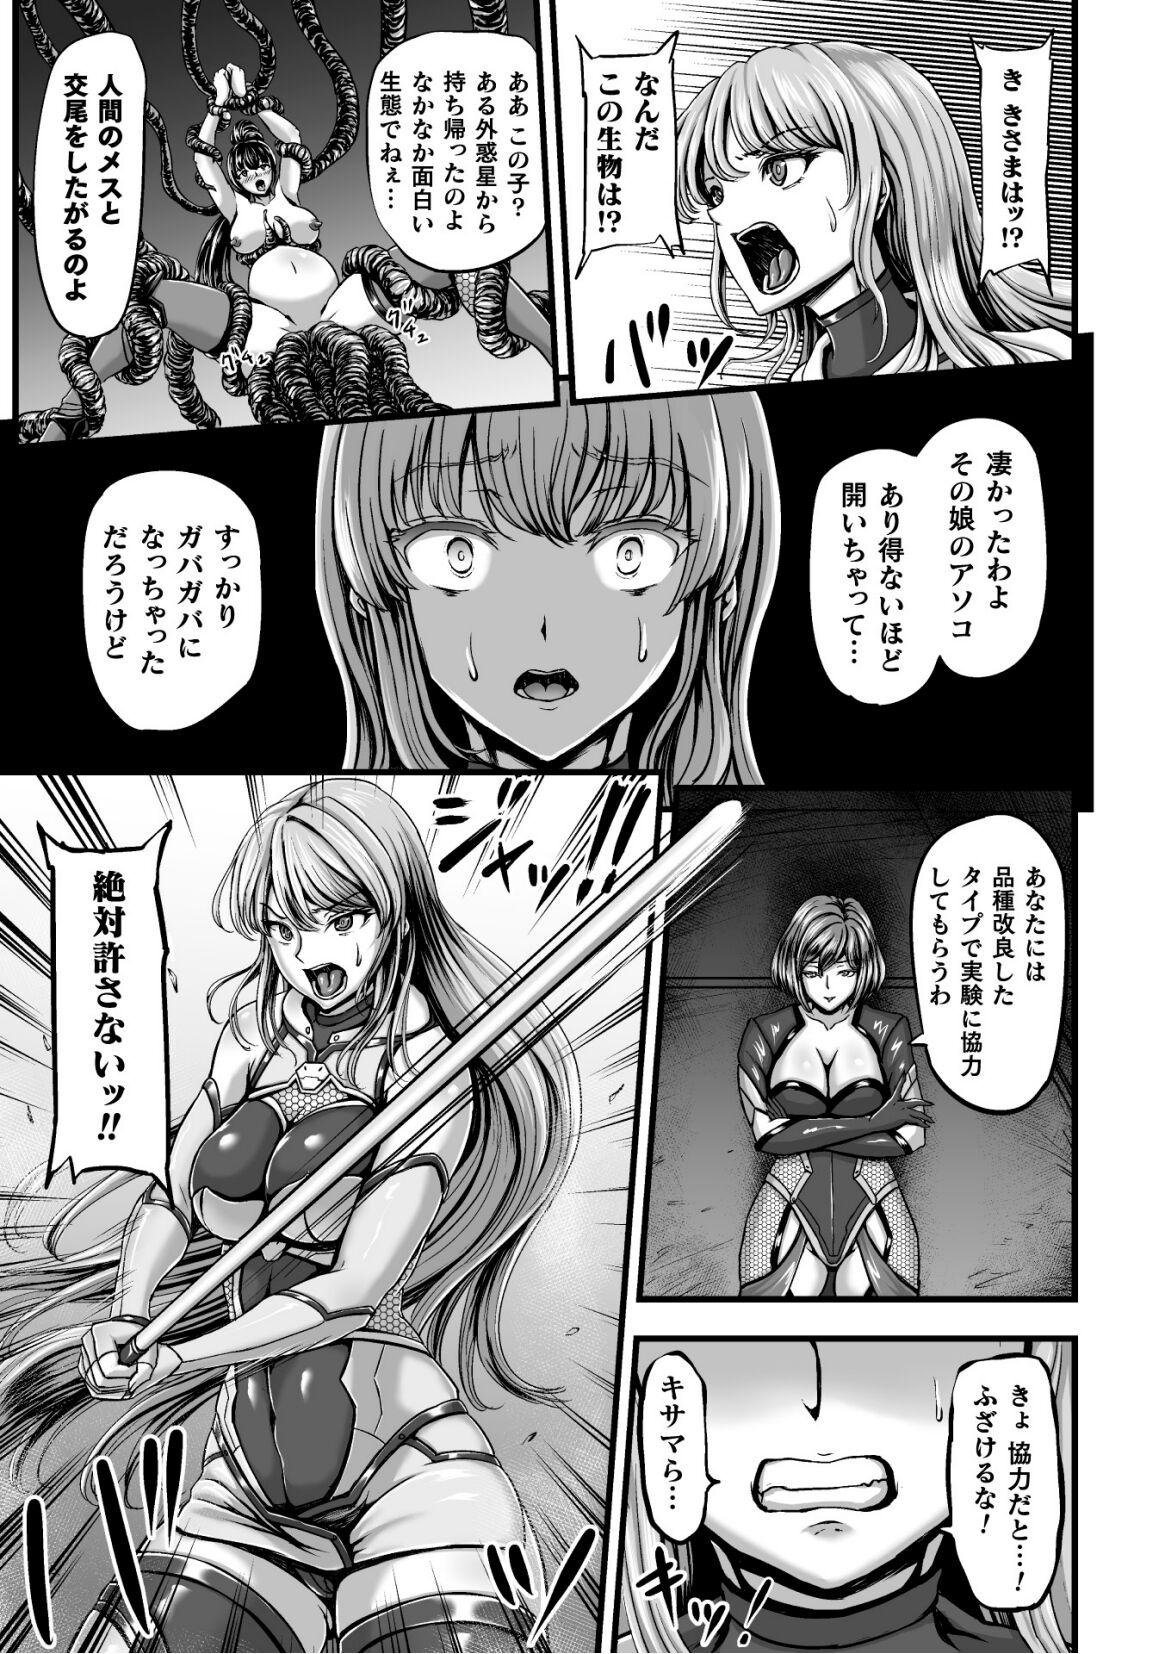 Pale Kangoku Tentacle Battleship Episode 2 - Original Bear - Page 9